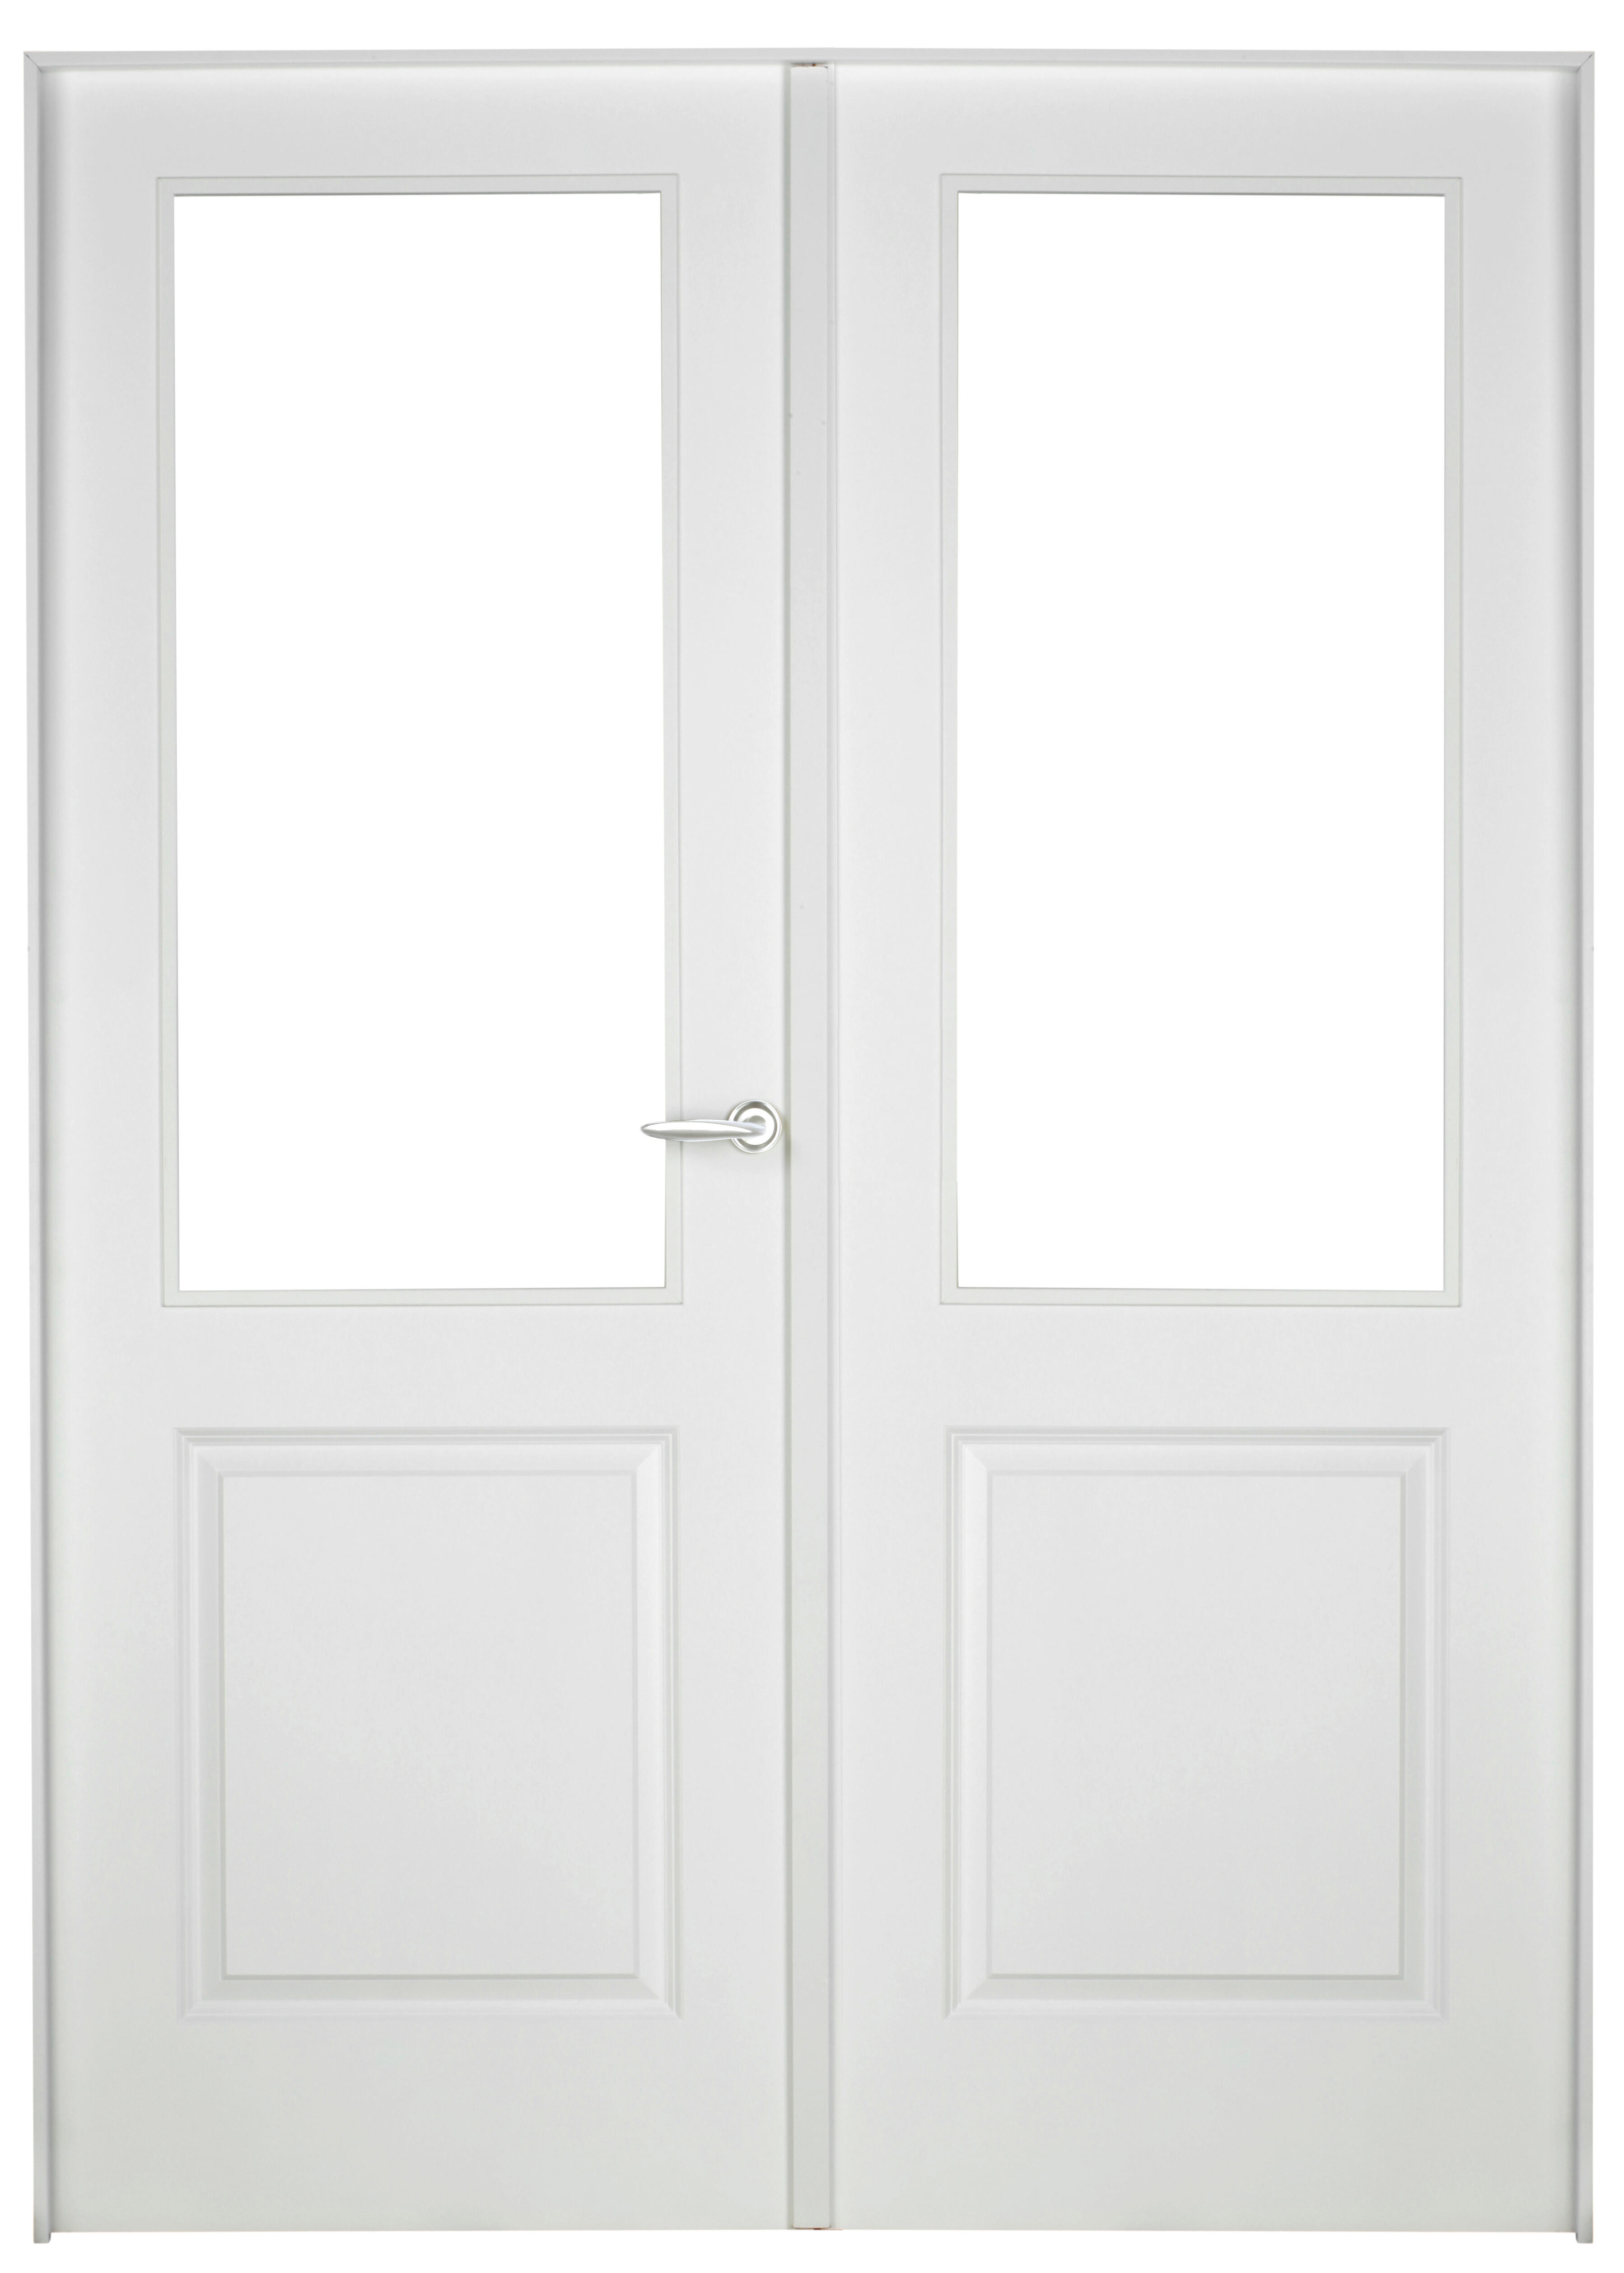 Puerta abatible bonn blanca aero blanco izquierda con cristal de 110x30 y 125cm